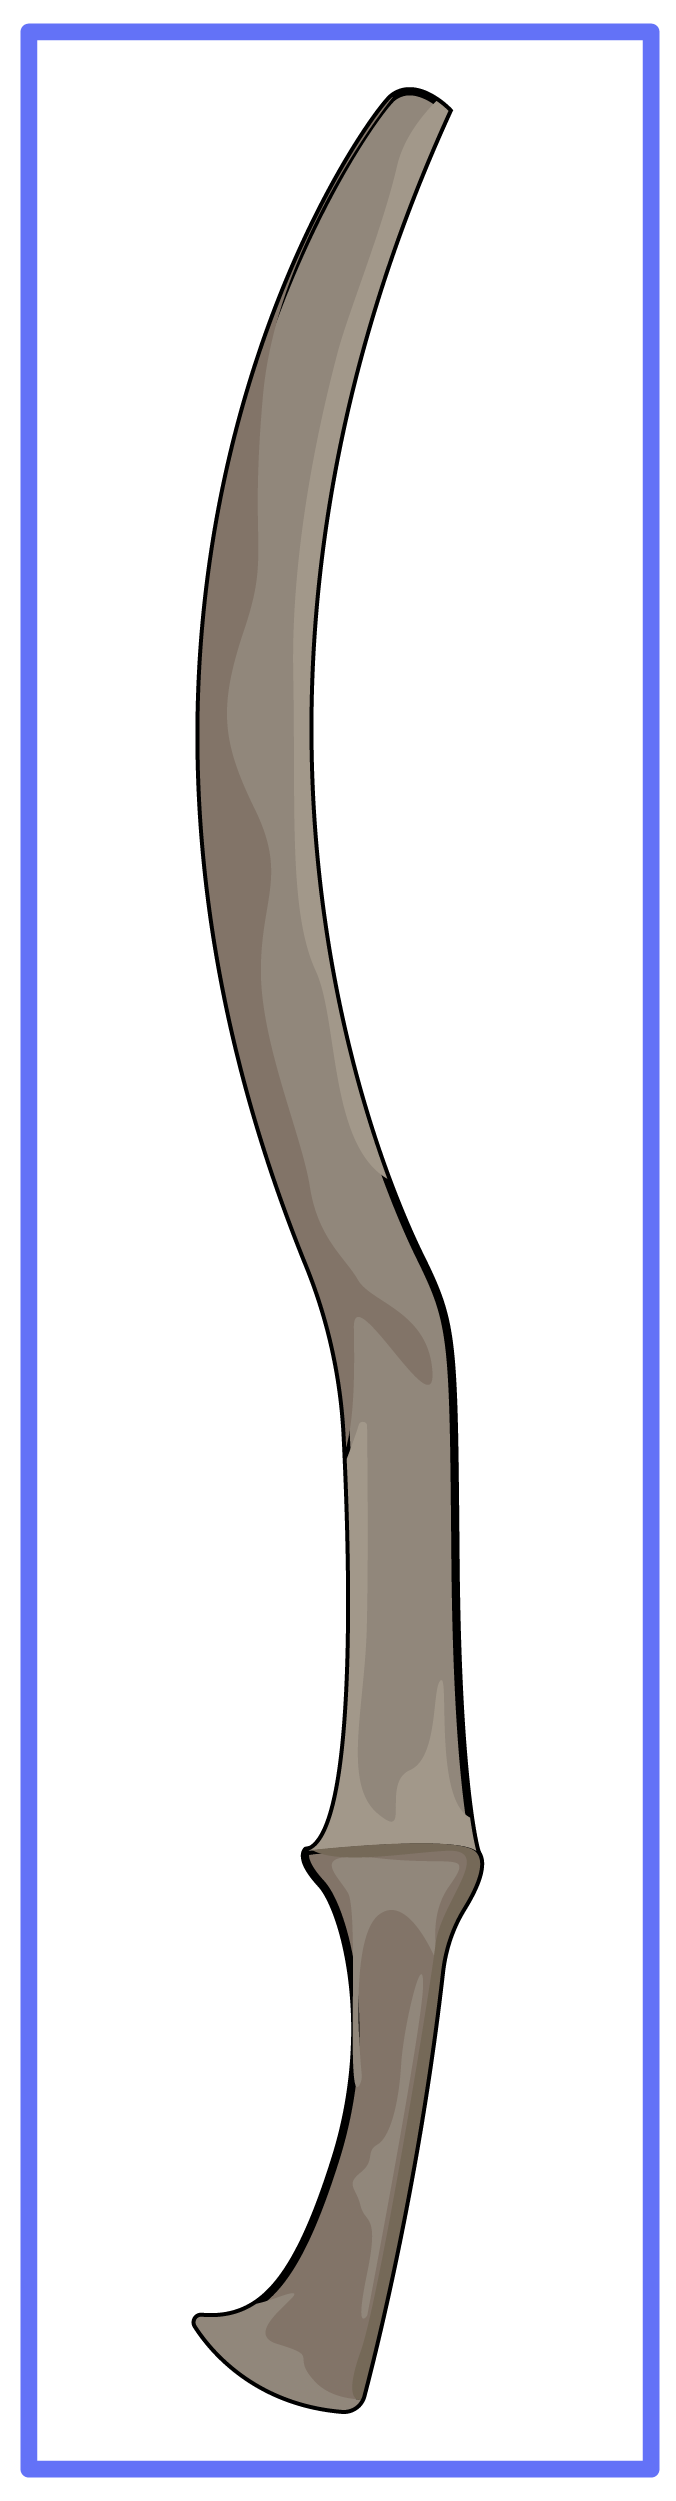 Рис. 2. Ассирийский железный меч